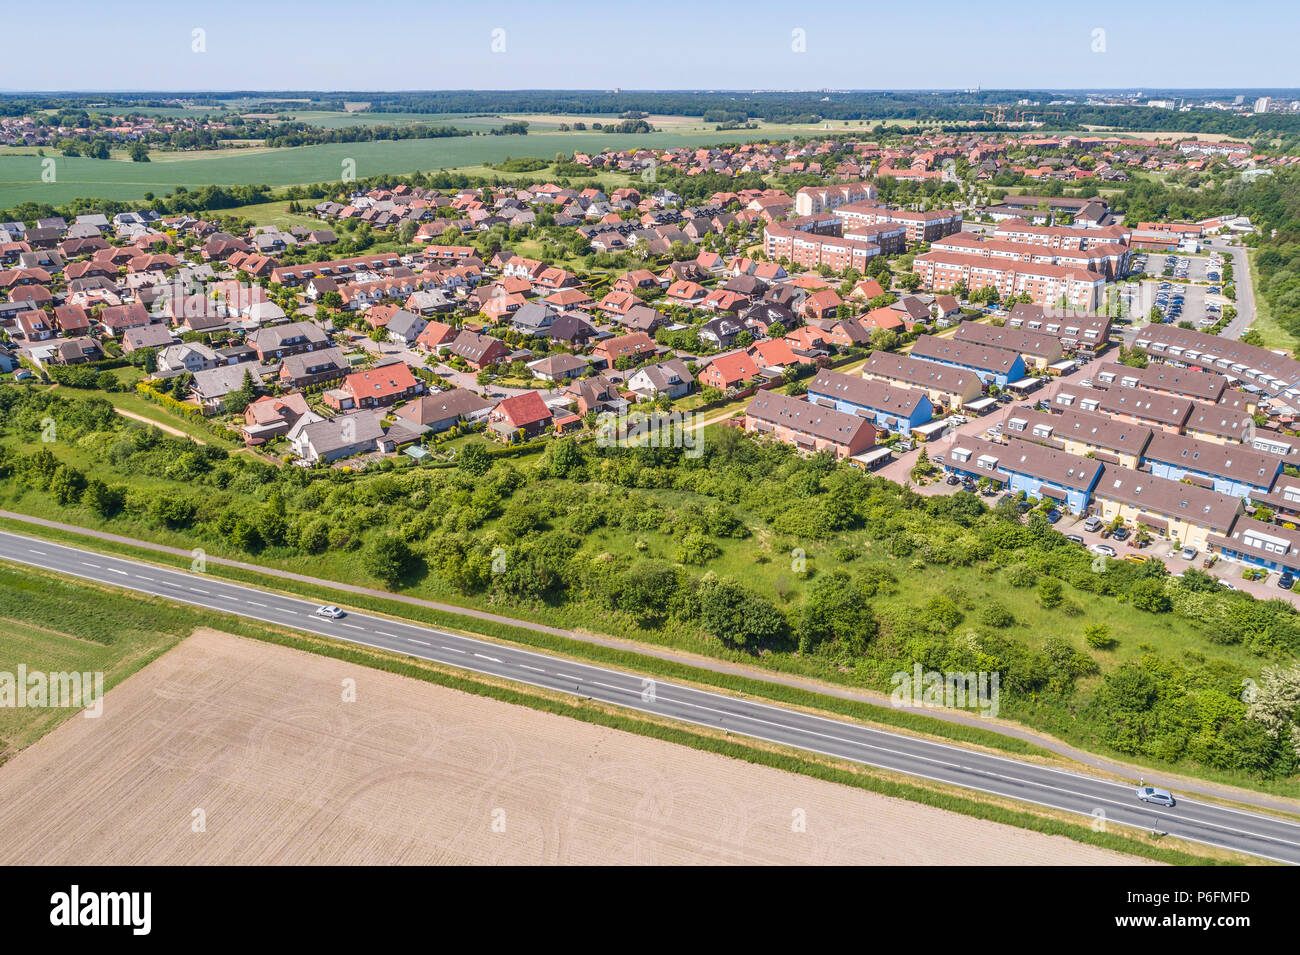 Vista aérea de un barrio de las afueras de Wolfsburg en Alemania, con casas unifamiliares, casas adosadas y unifamiliares, tierras cultivables en el f Foto de stock